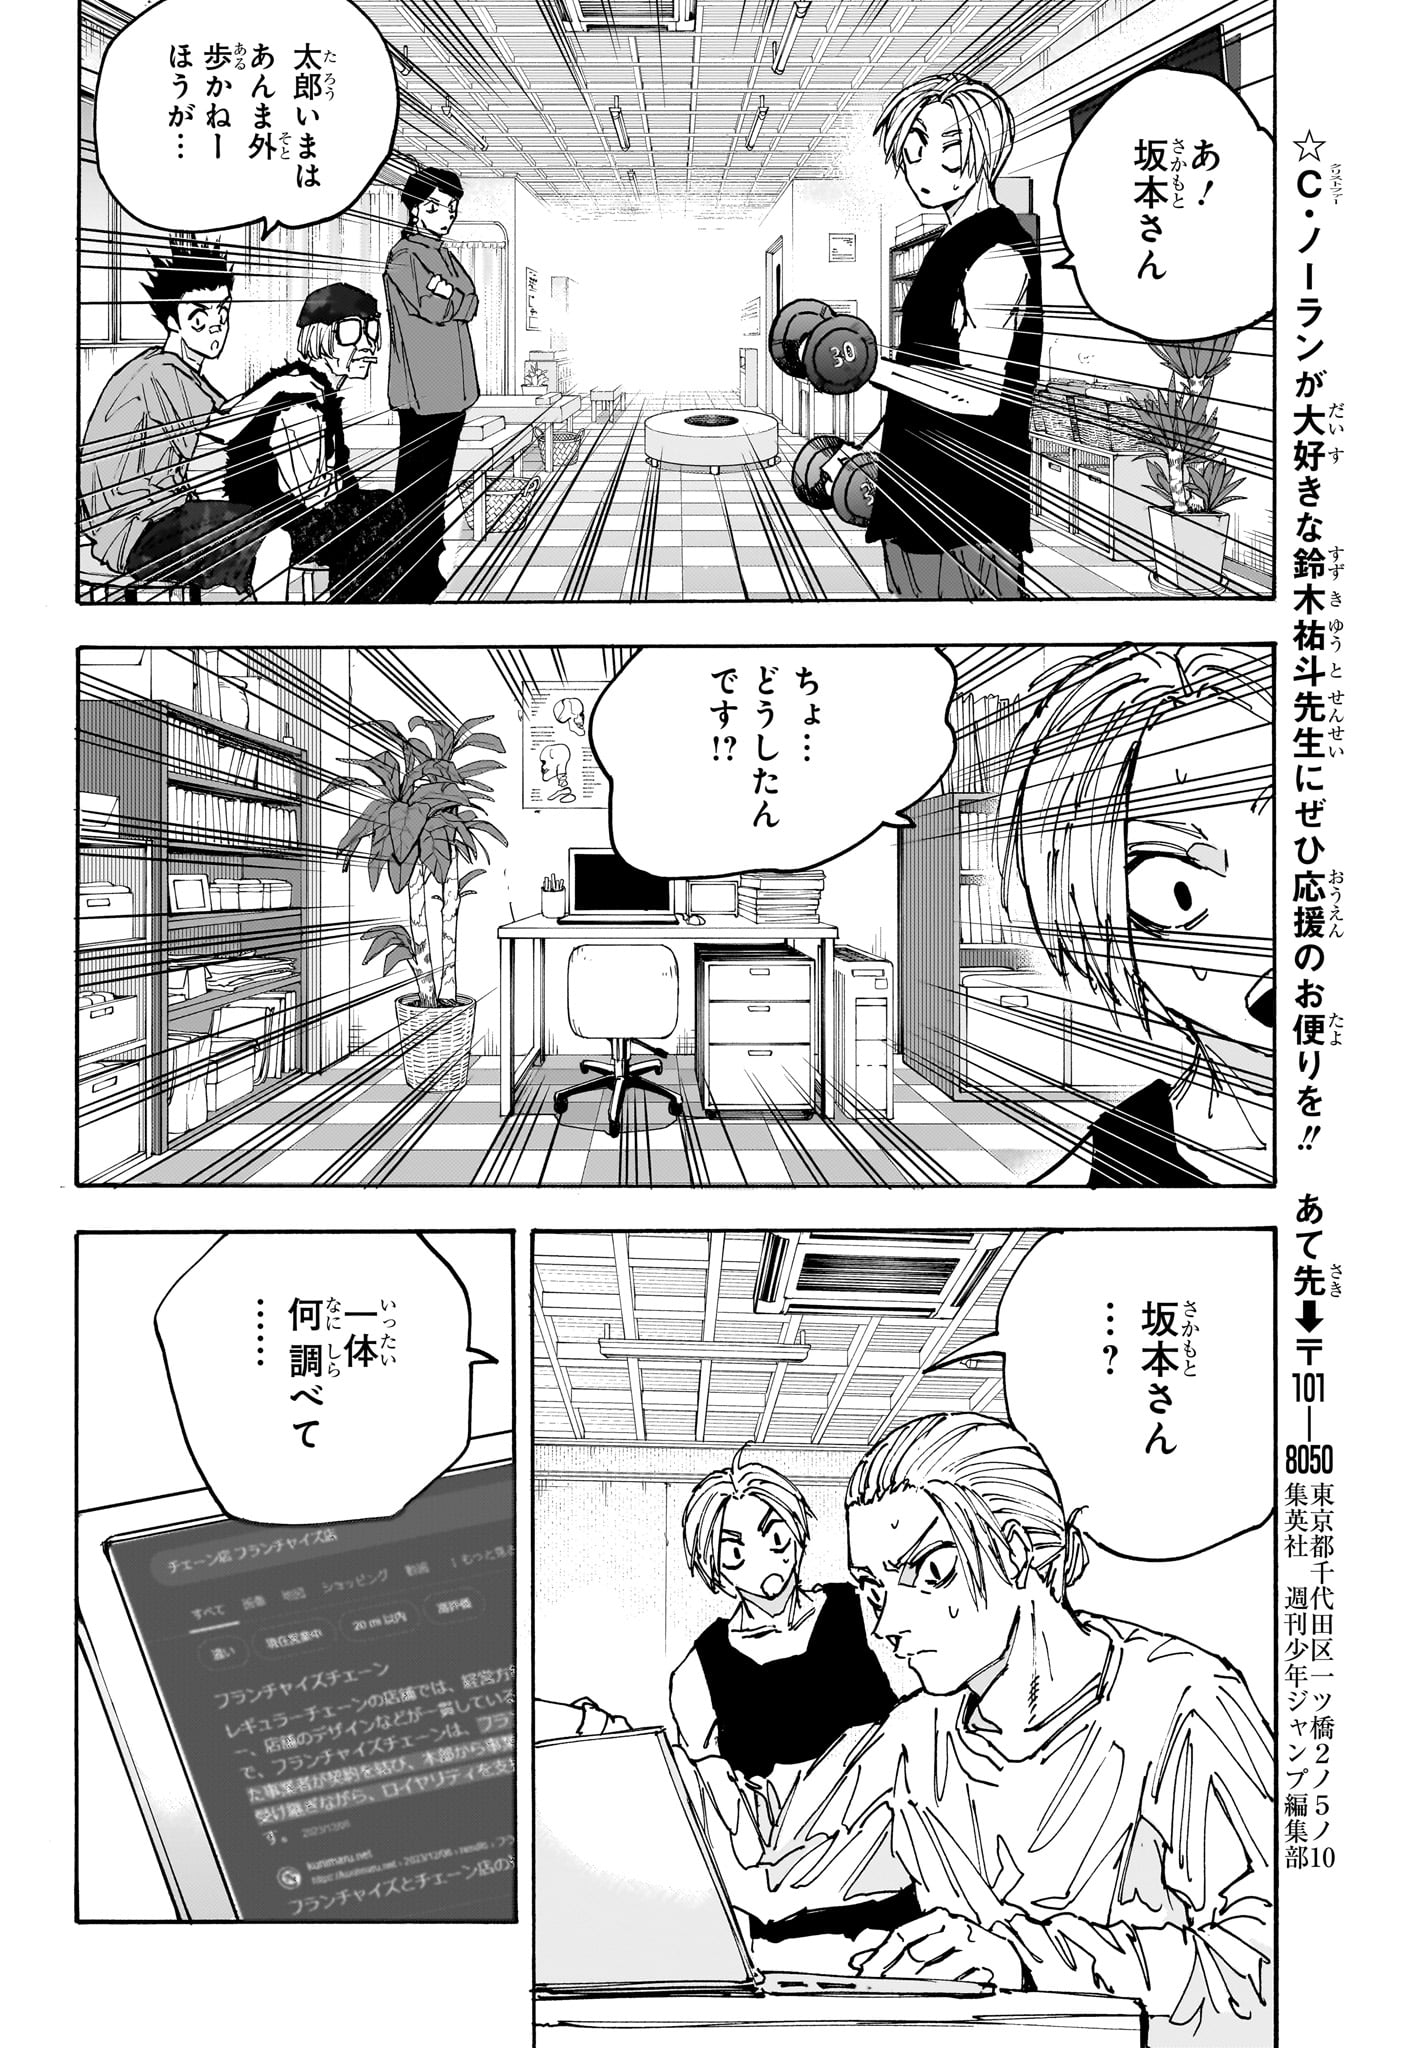 Sakamoto Days - Chapter 171 - Page 14